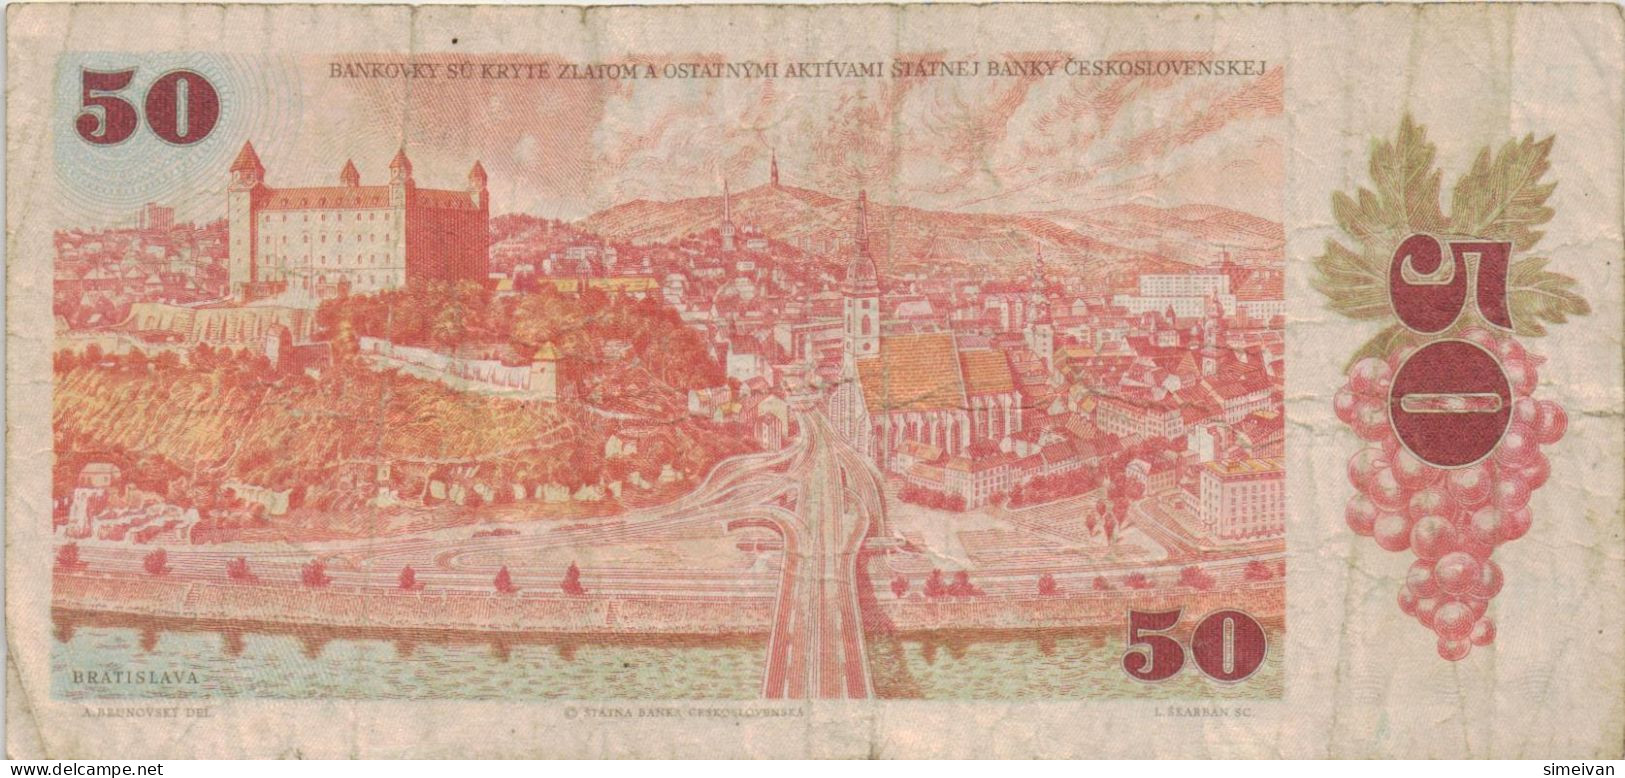 Czechoslovakia 50 Korun 1987 P-96a Banknote Europe Currency Tchécoslovaquie Tschechoslowakei #5260 - Cecoslovacchia